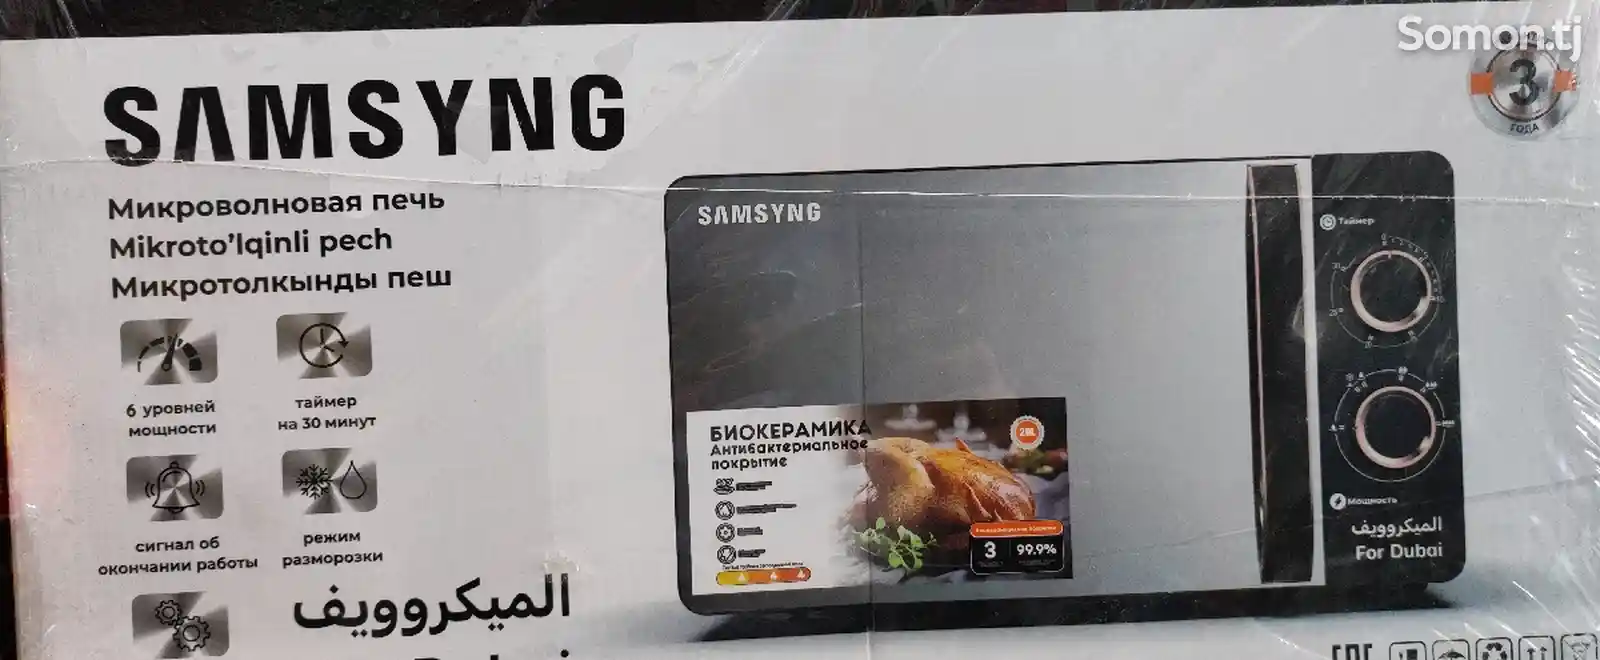 Микроволновая печь Samsung 20l-2